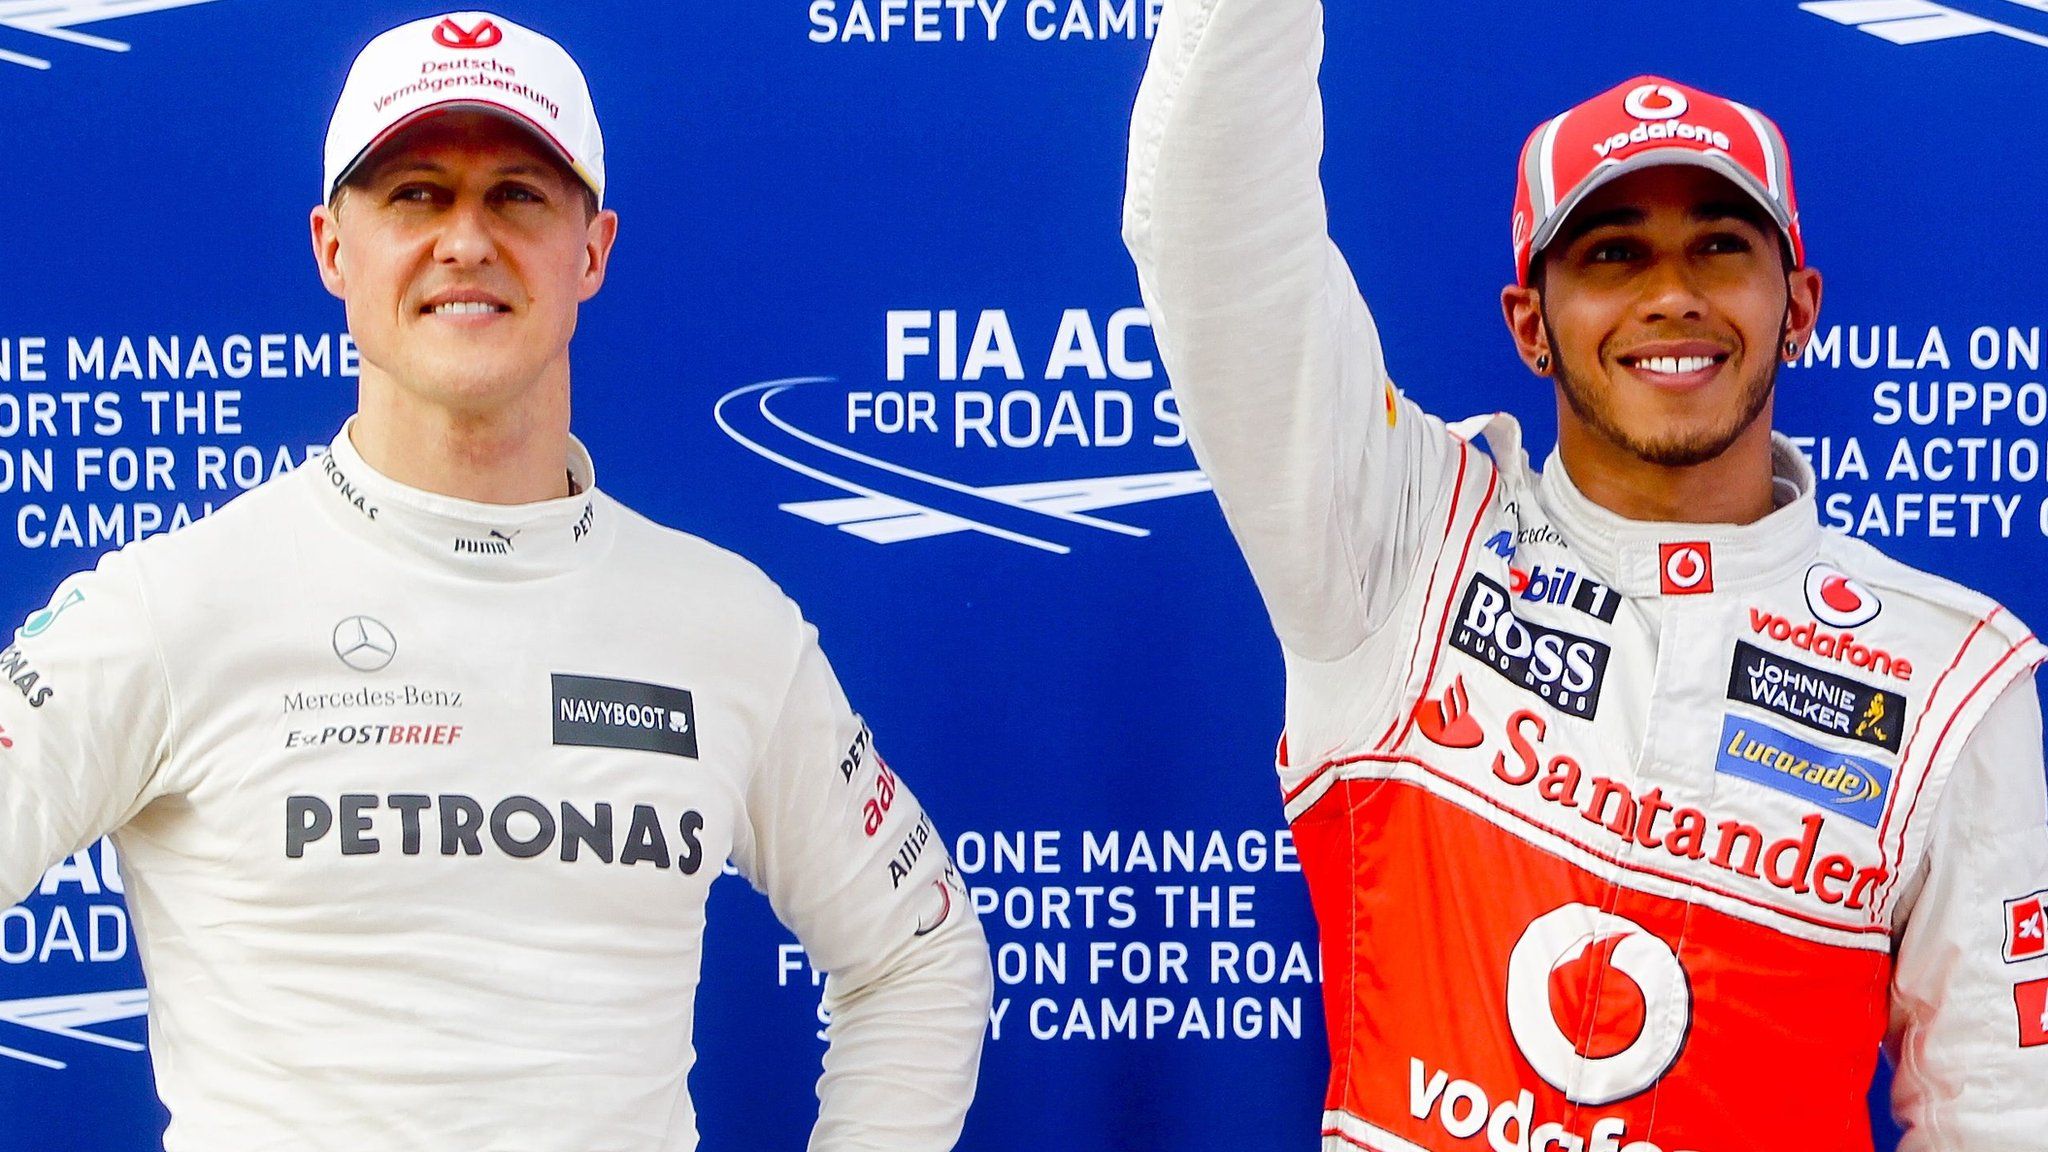 فرمول یک - لوییس همیلتون - مایکل شوماخر - Lewis Hamilton - Michael Schumacher